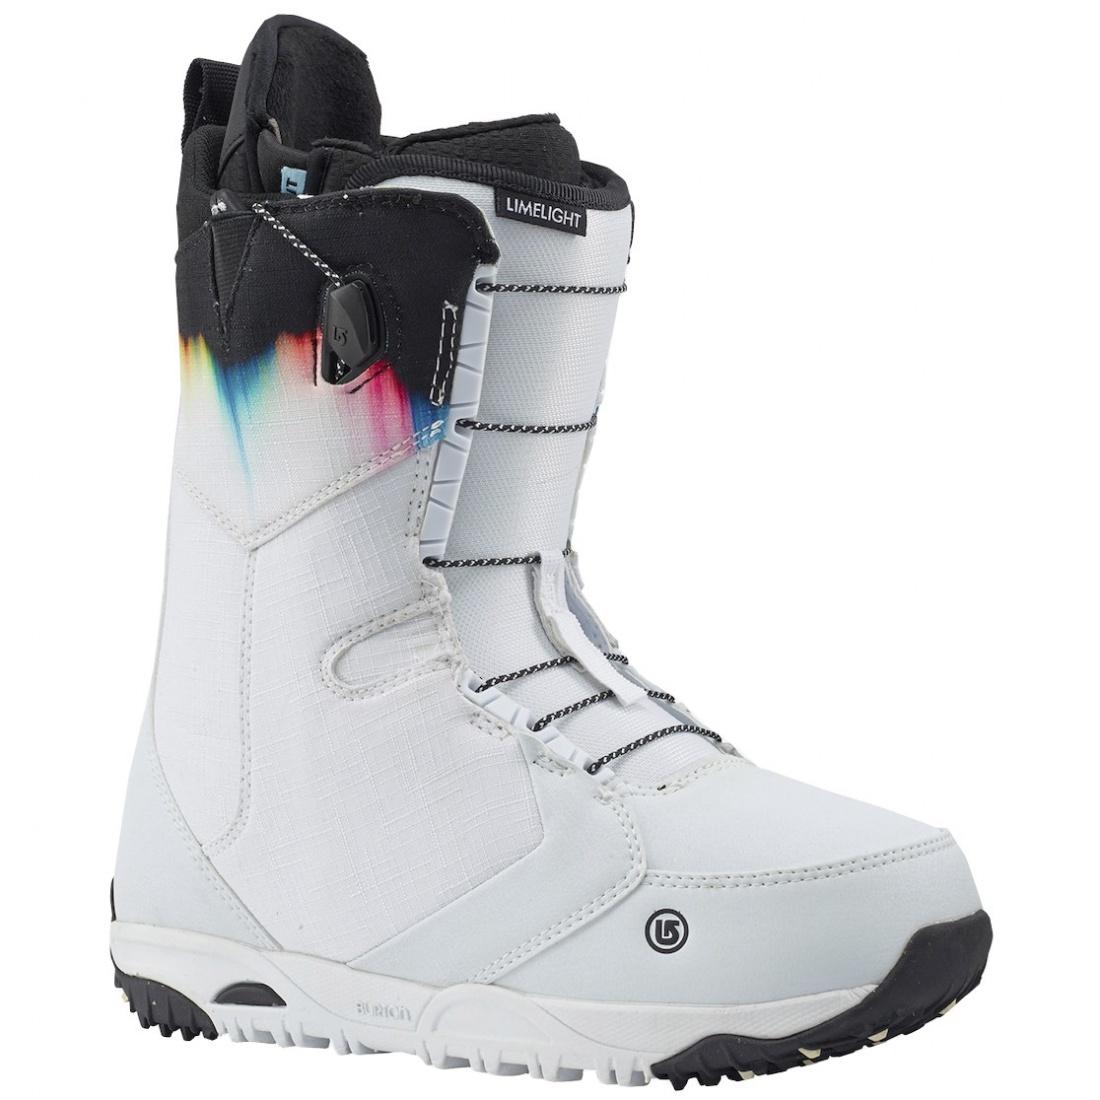 Ботинки сноубордические LIMELIGHT женские Burton, цвет белый, размер 5.5 - фото 1